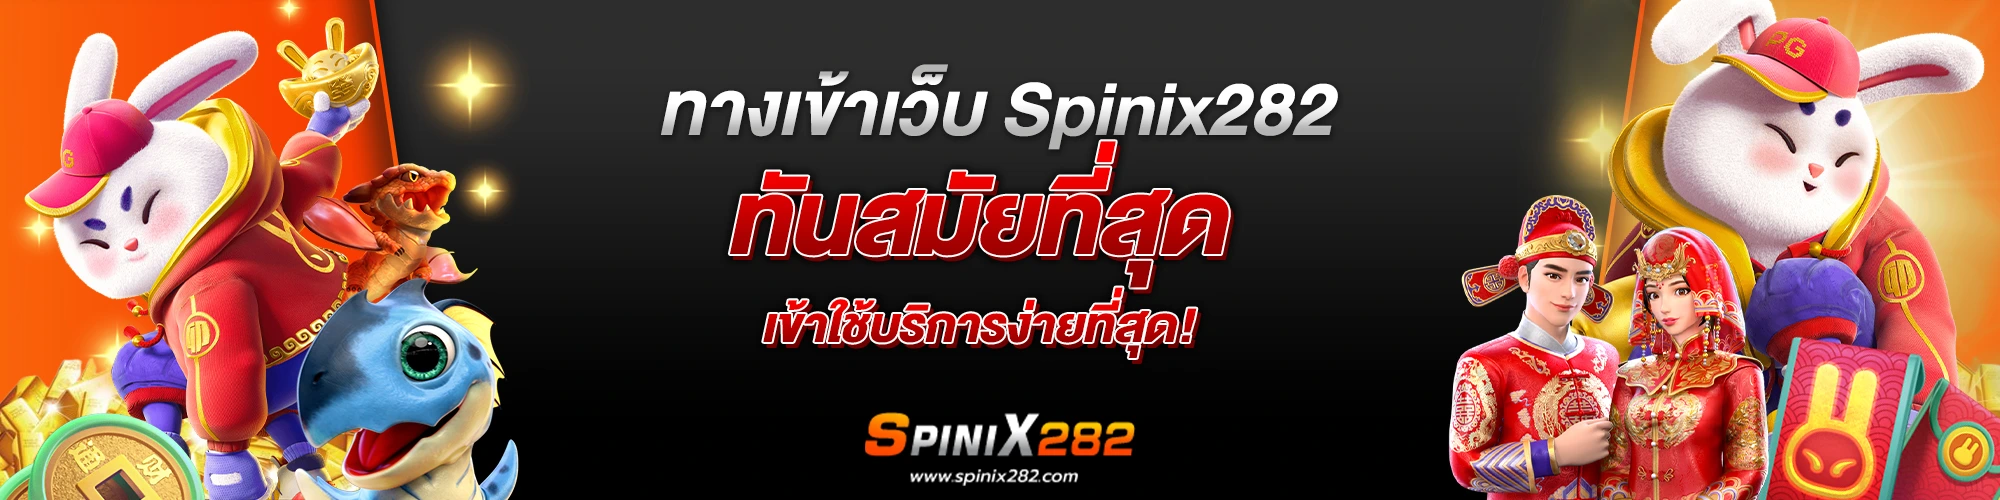 ทางเข้าเว็บ Spinix282 ทันสมัยที่สุด เข้าใช้บริการง่ายที่สุด!​